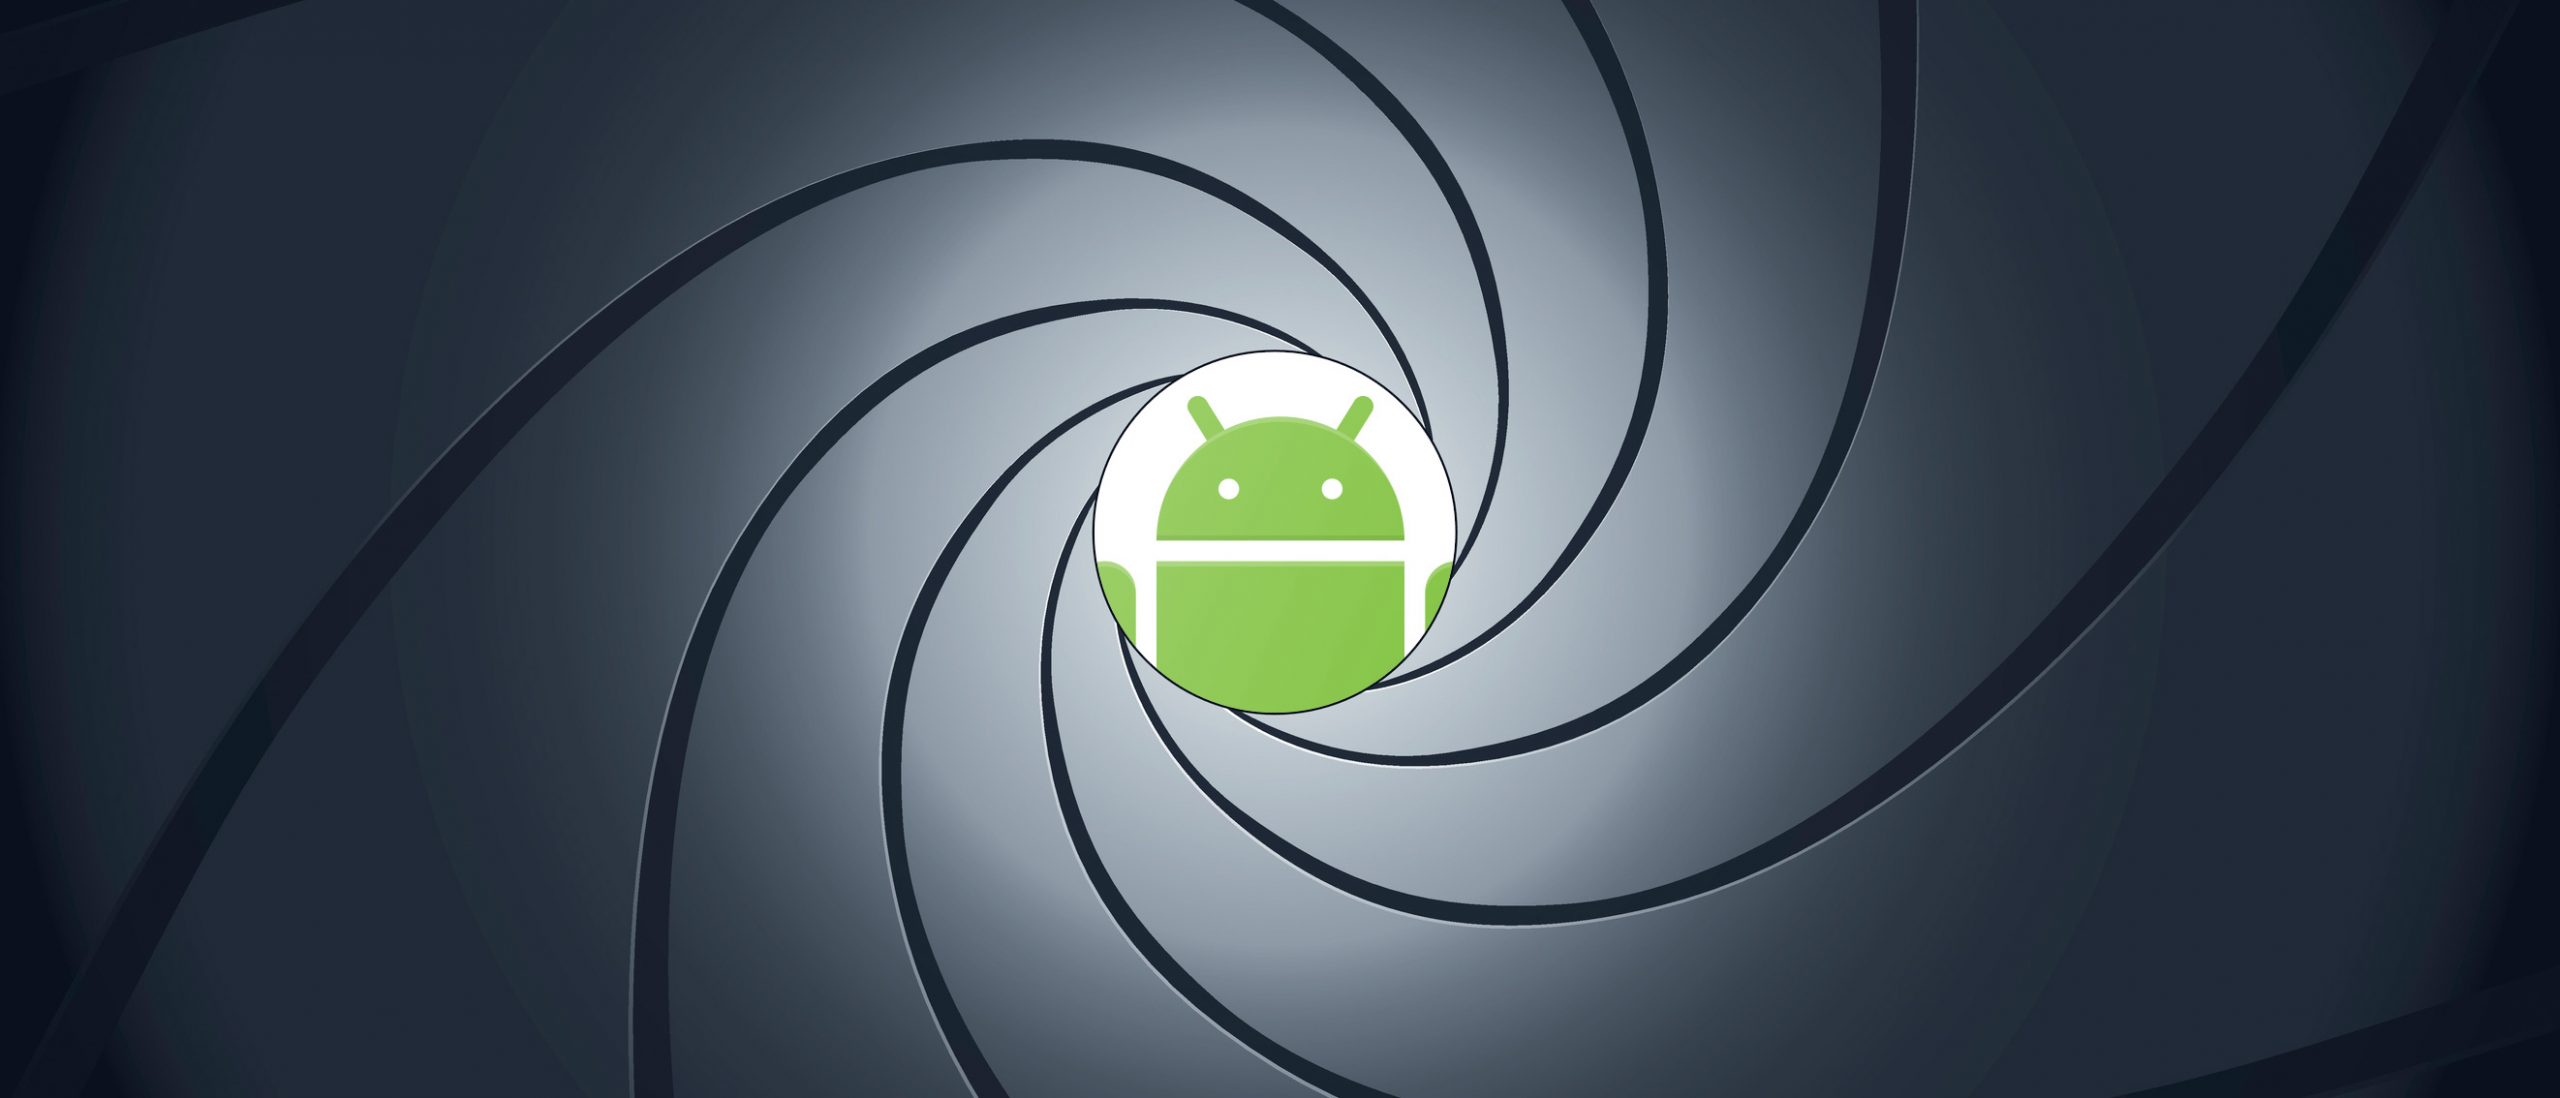 Android-телефоны постоянно следят за своими пользователями